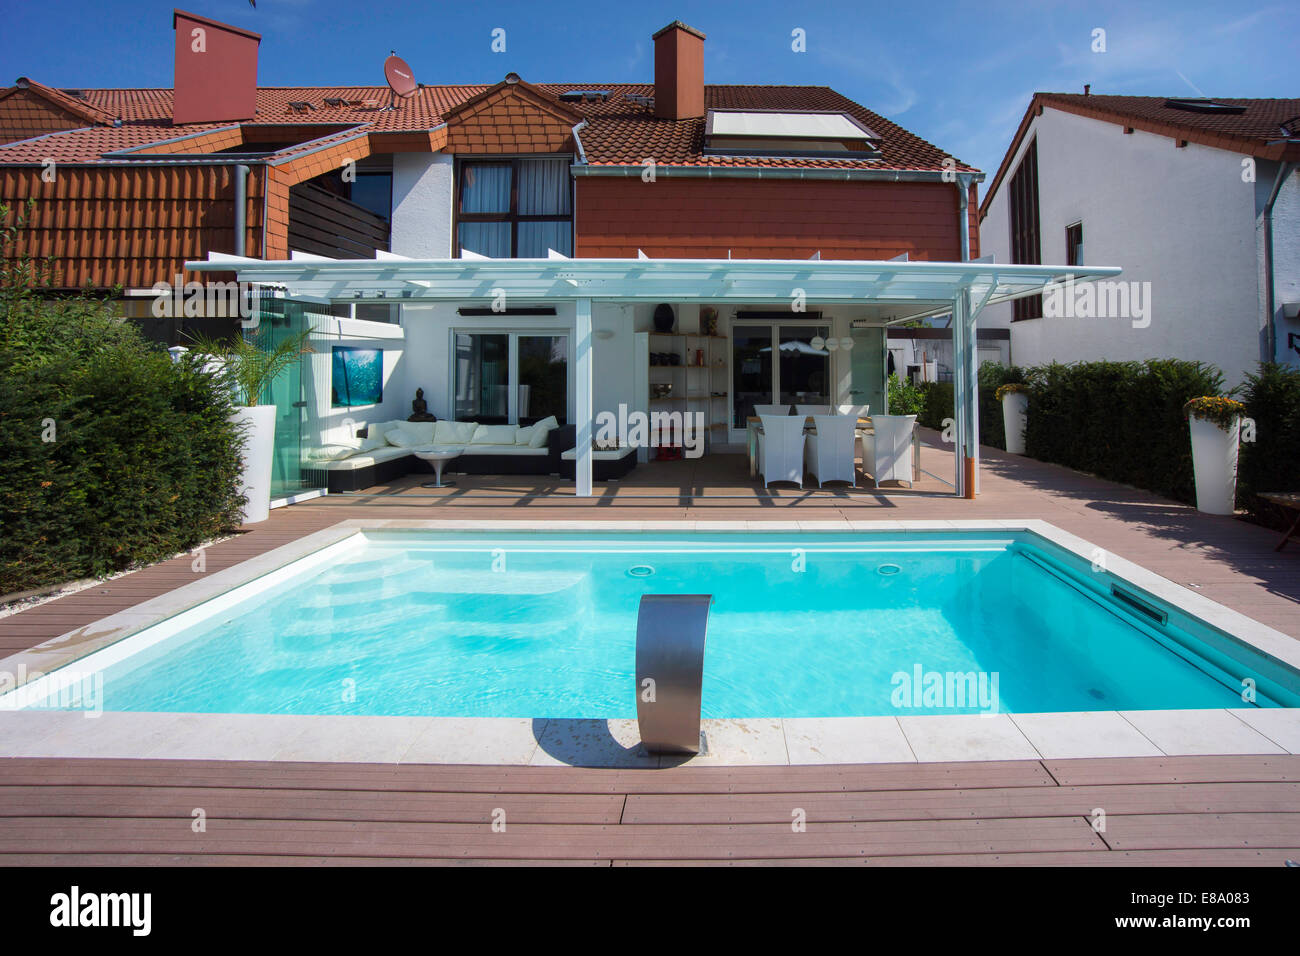 Chalet privado con un conservatorio, una piscina y una terraza, Alemania Foto de stock